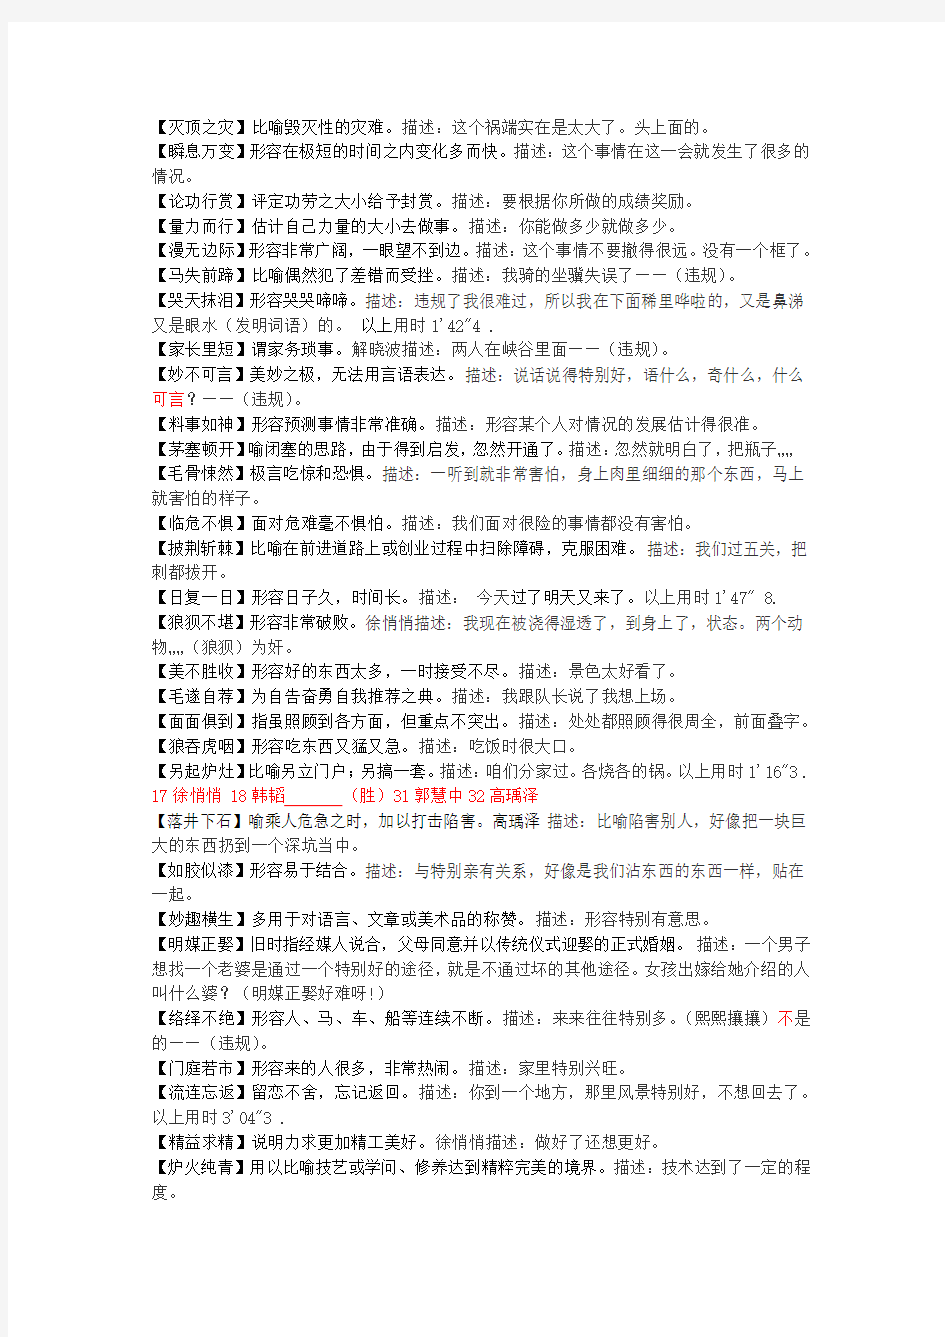 中国成语大会选手描述成语情况第二场